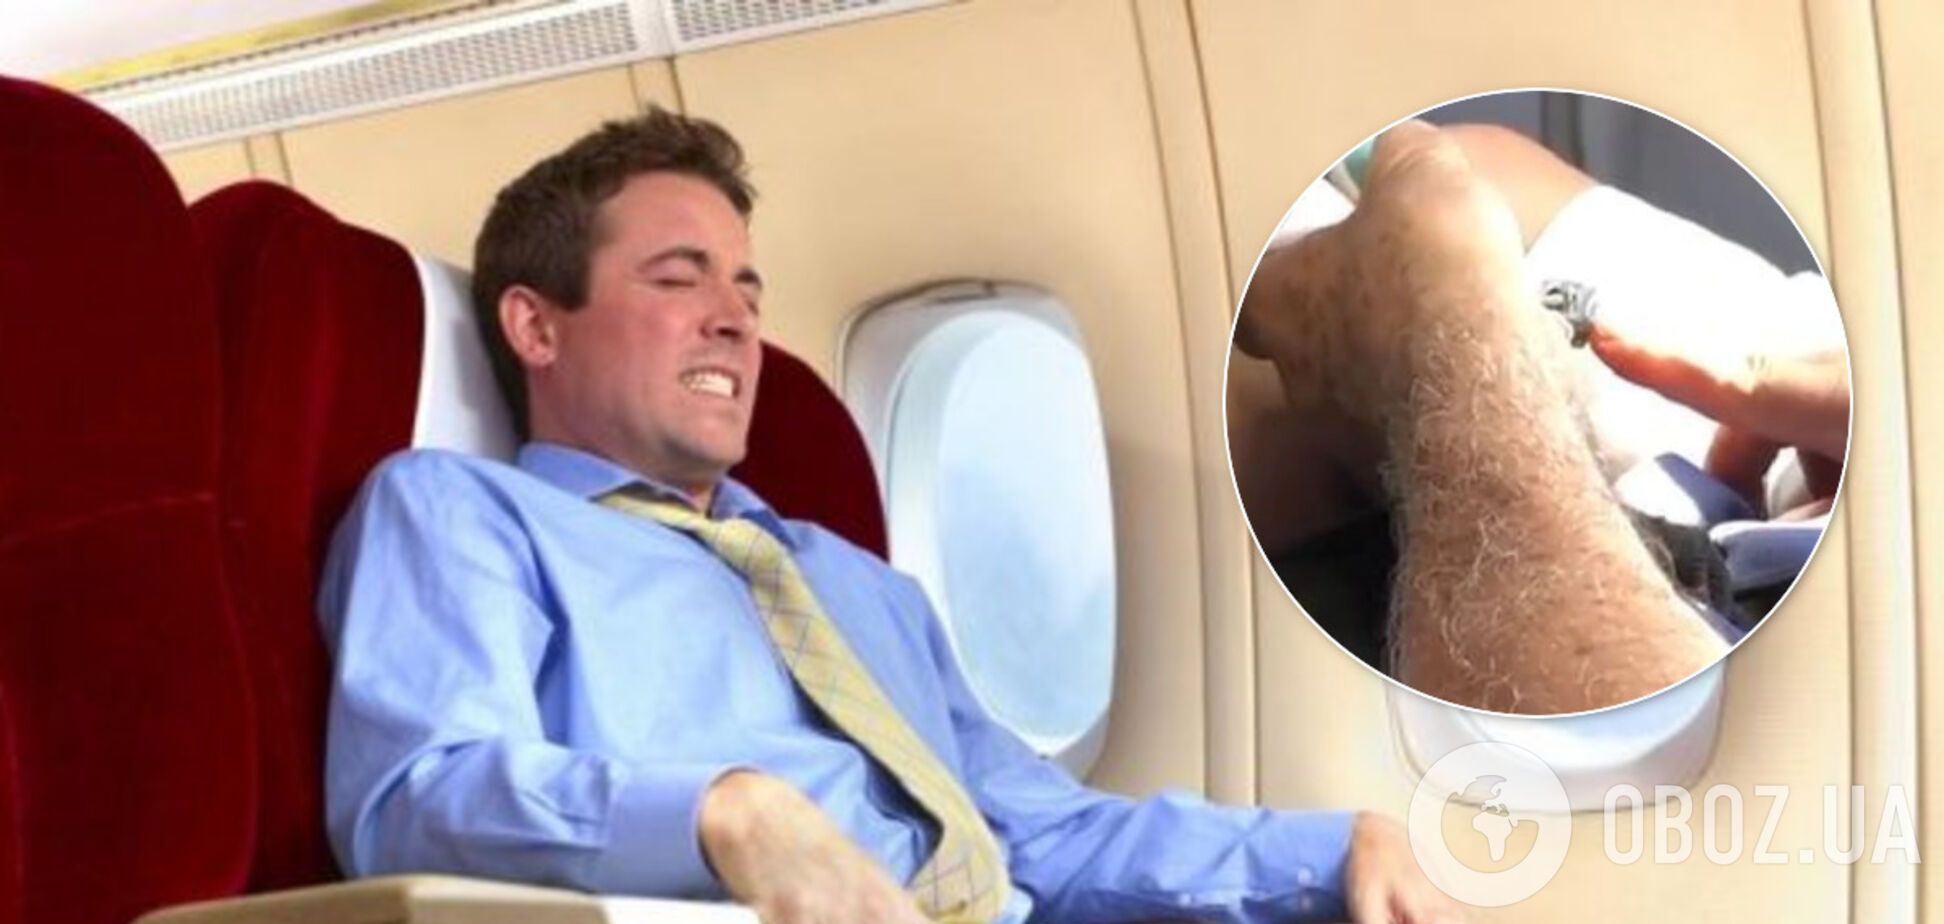 Підстригав нігті в літаку: чоловік викликав огиду у попутників